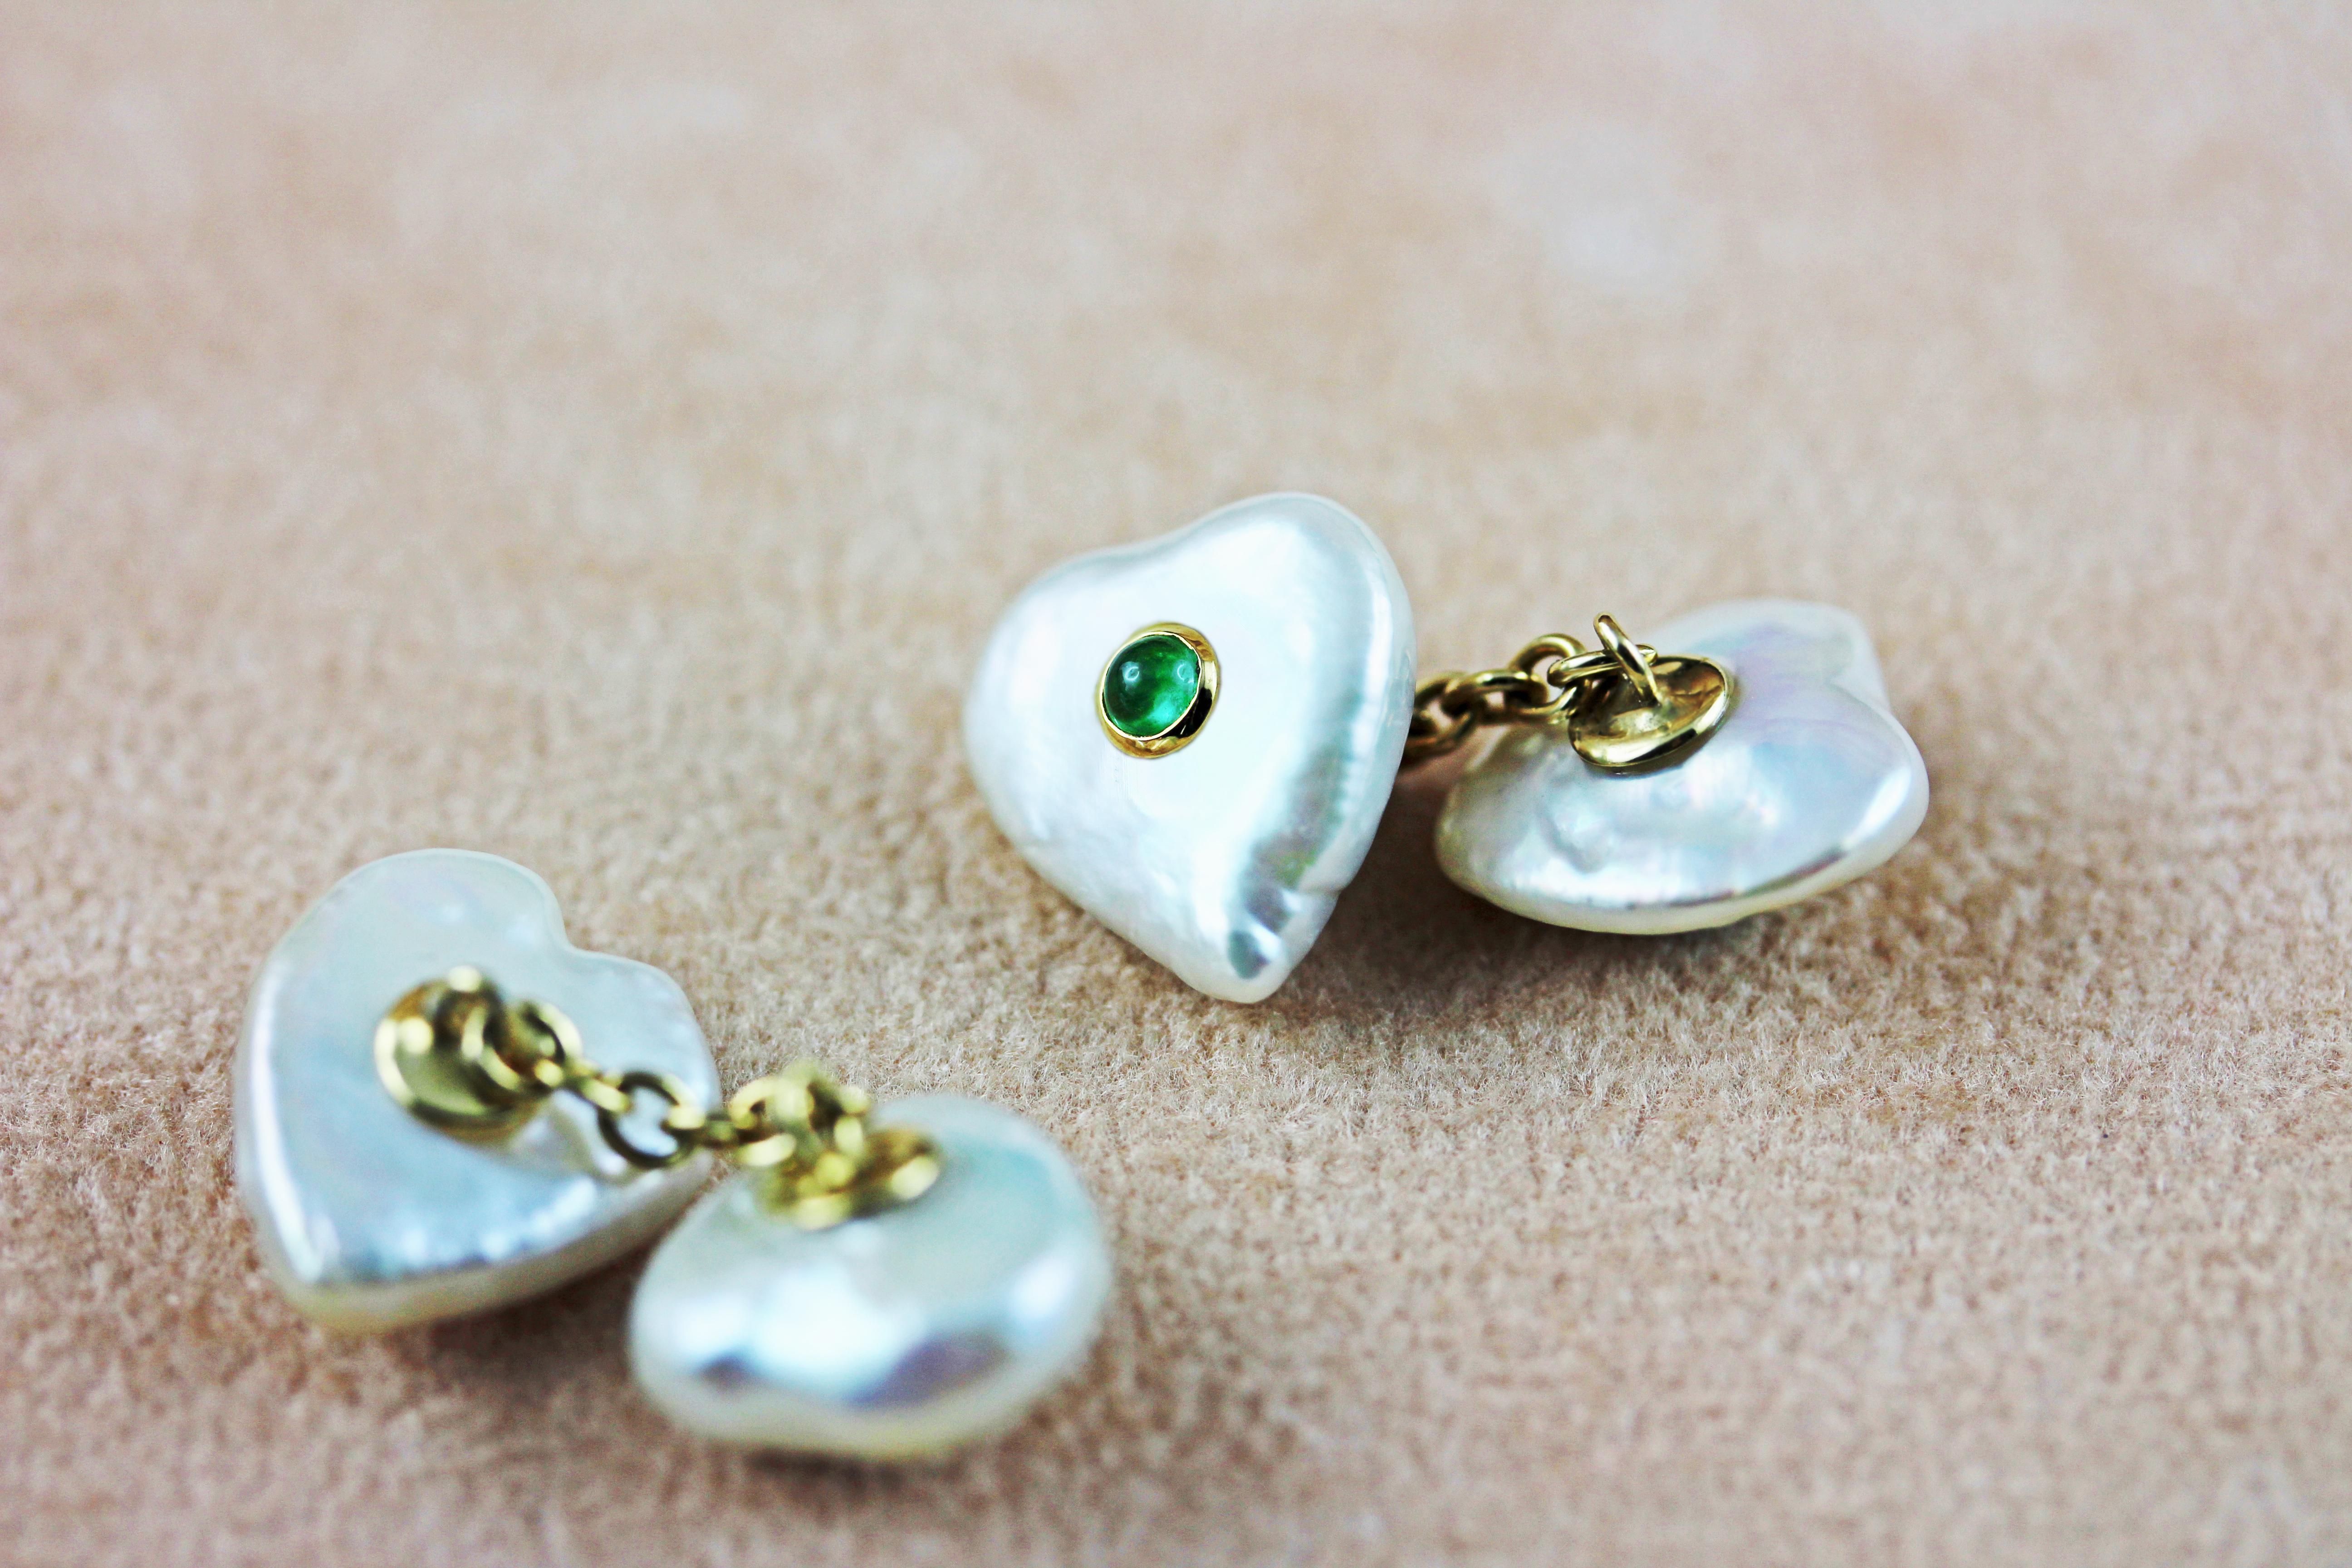 En forme de cœur, les perles Keshi qui composent la face avant et le fermoir de ces boutons de manchette saisissants sont des éléments uniques qui rendent cette pièce charmante et intemporelle. 
Chaque perle est ornée au centre d'une pierre émeraude